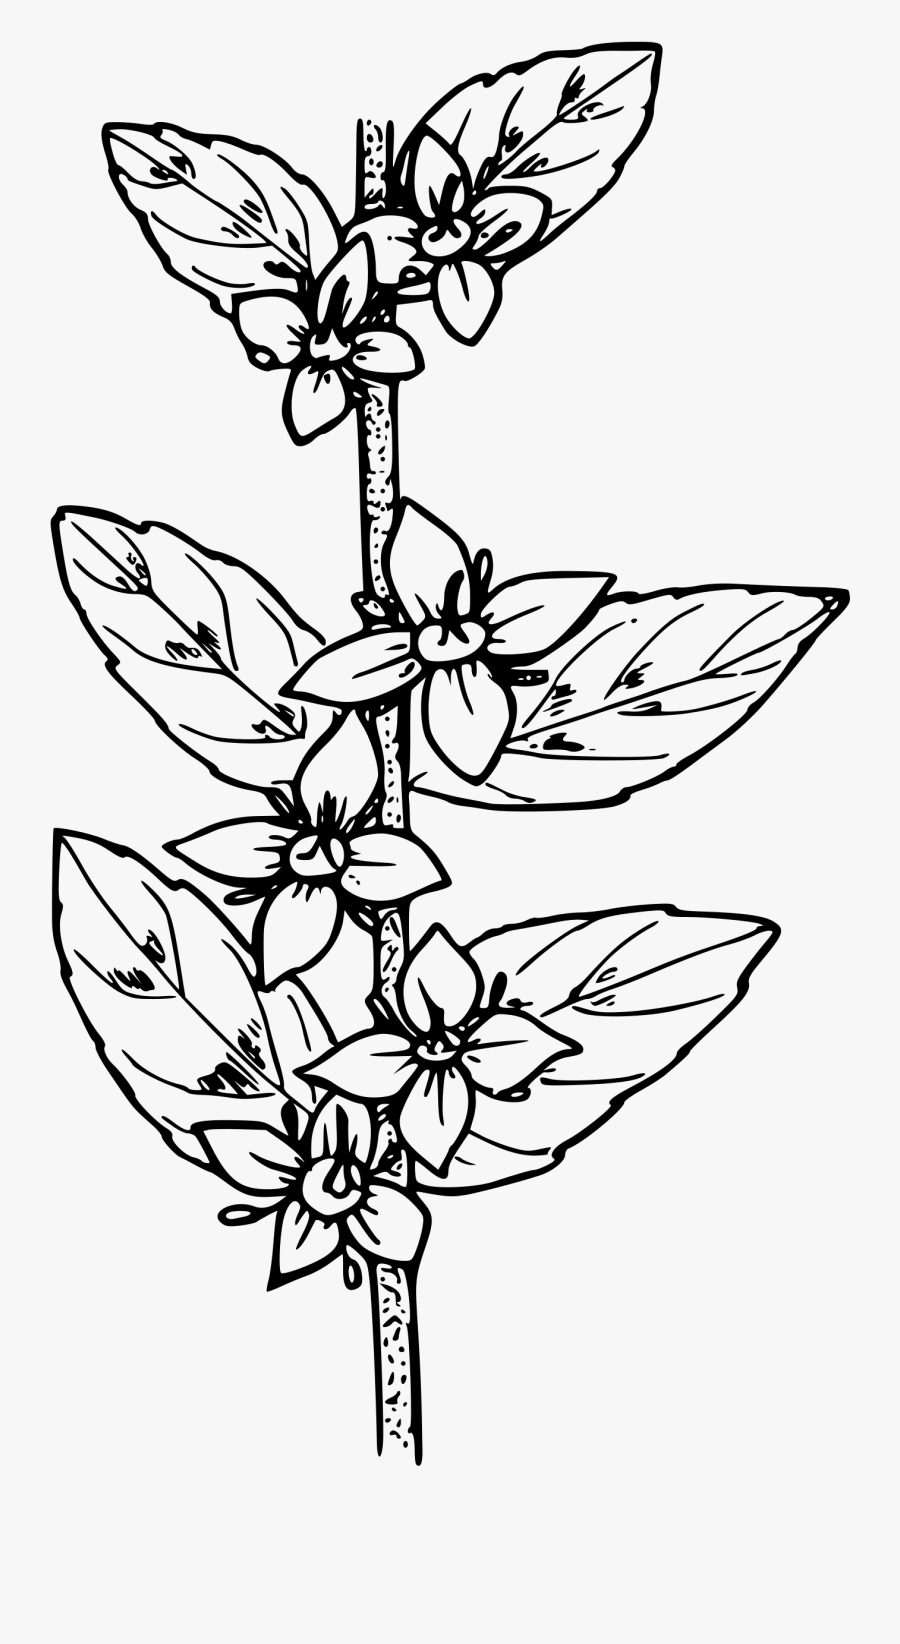 Oregon Boxwood - Gambar Flora Hitam Putih, Transparent Clipart